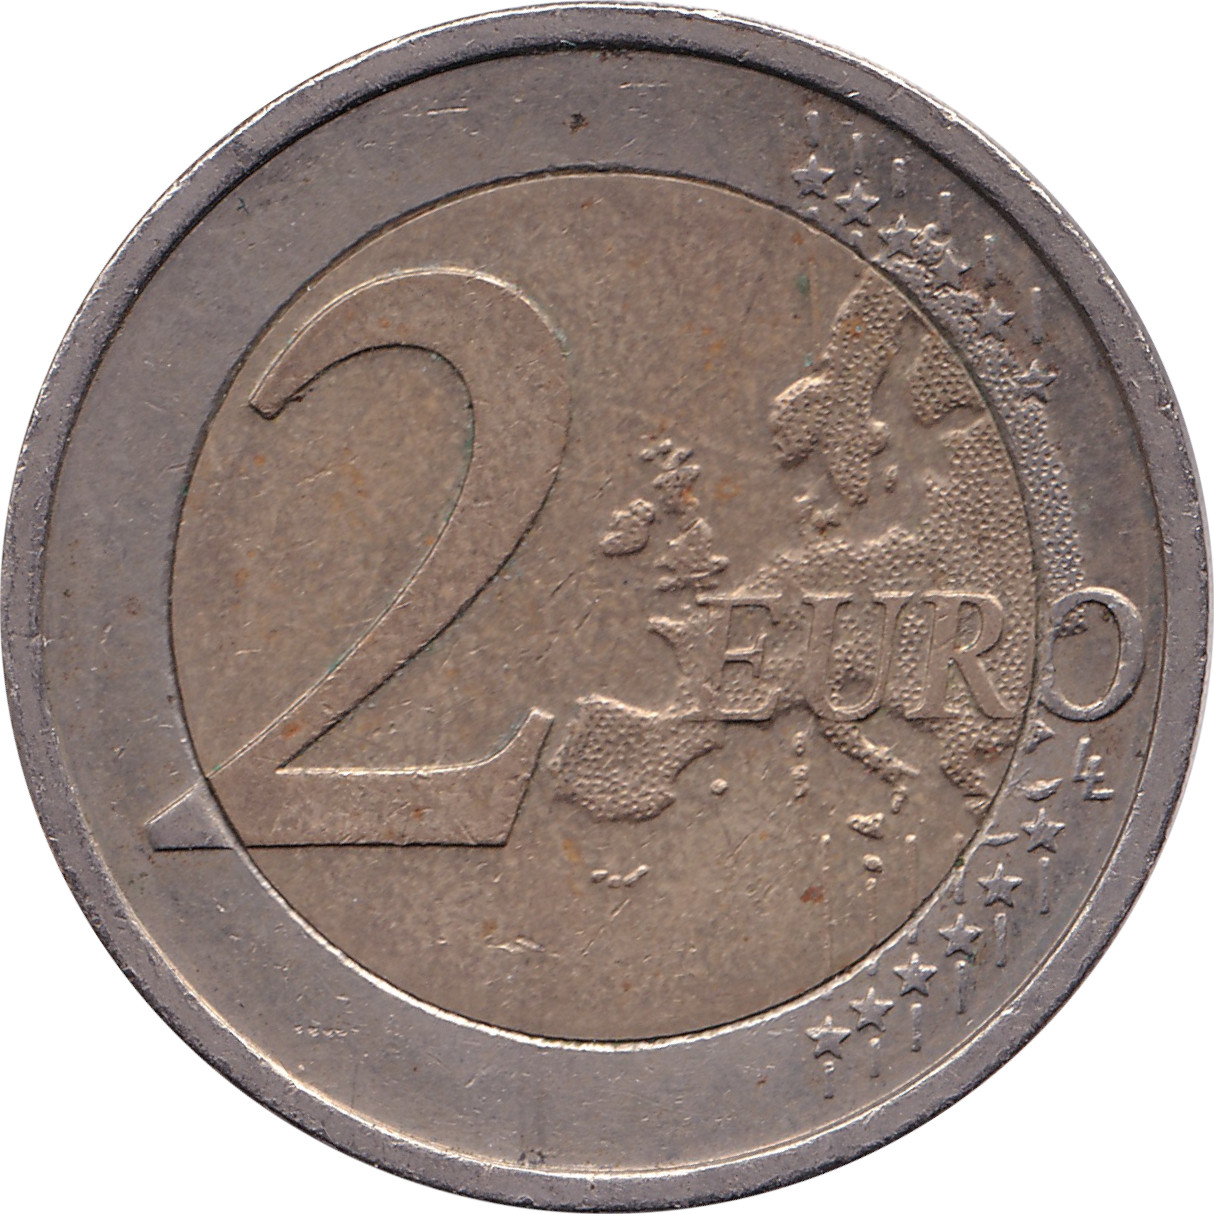 2 euro - Traité de Rome